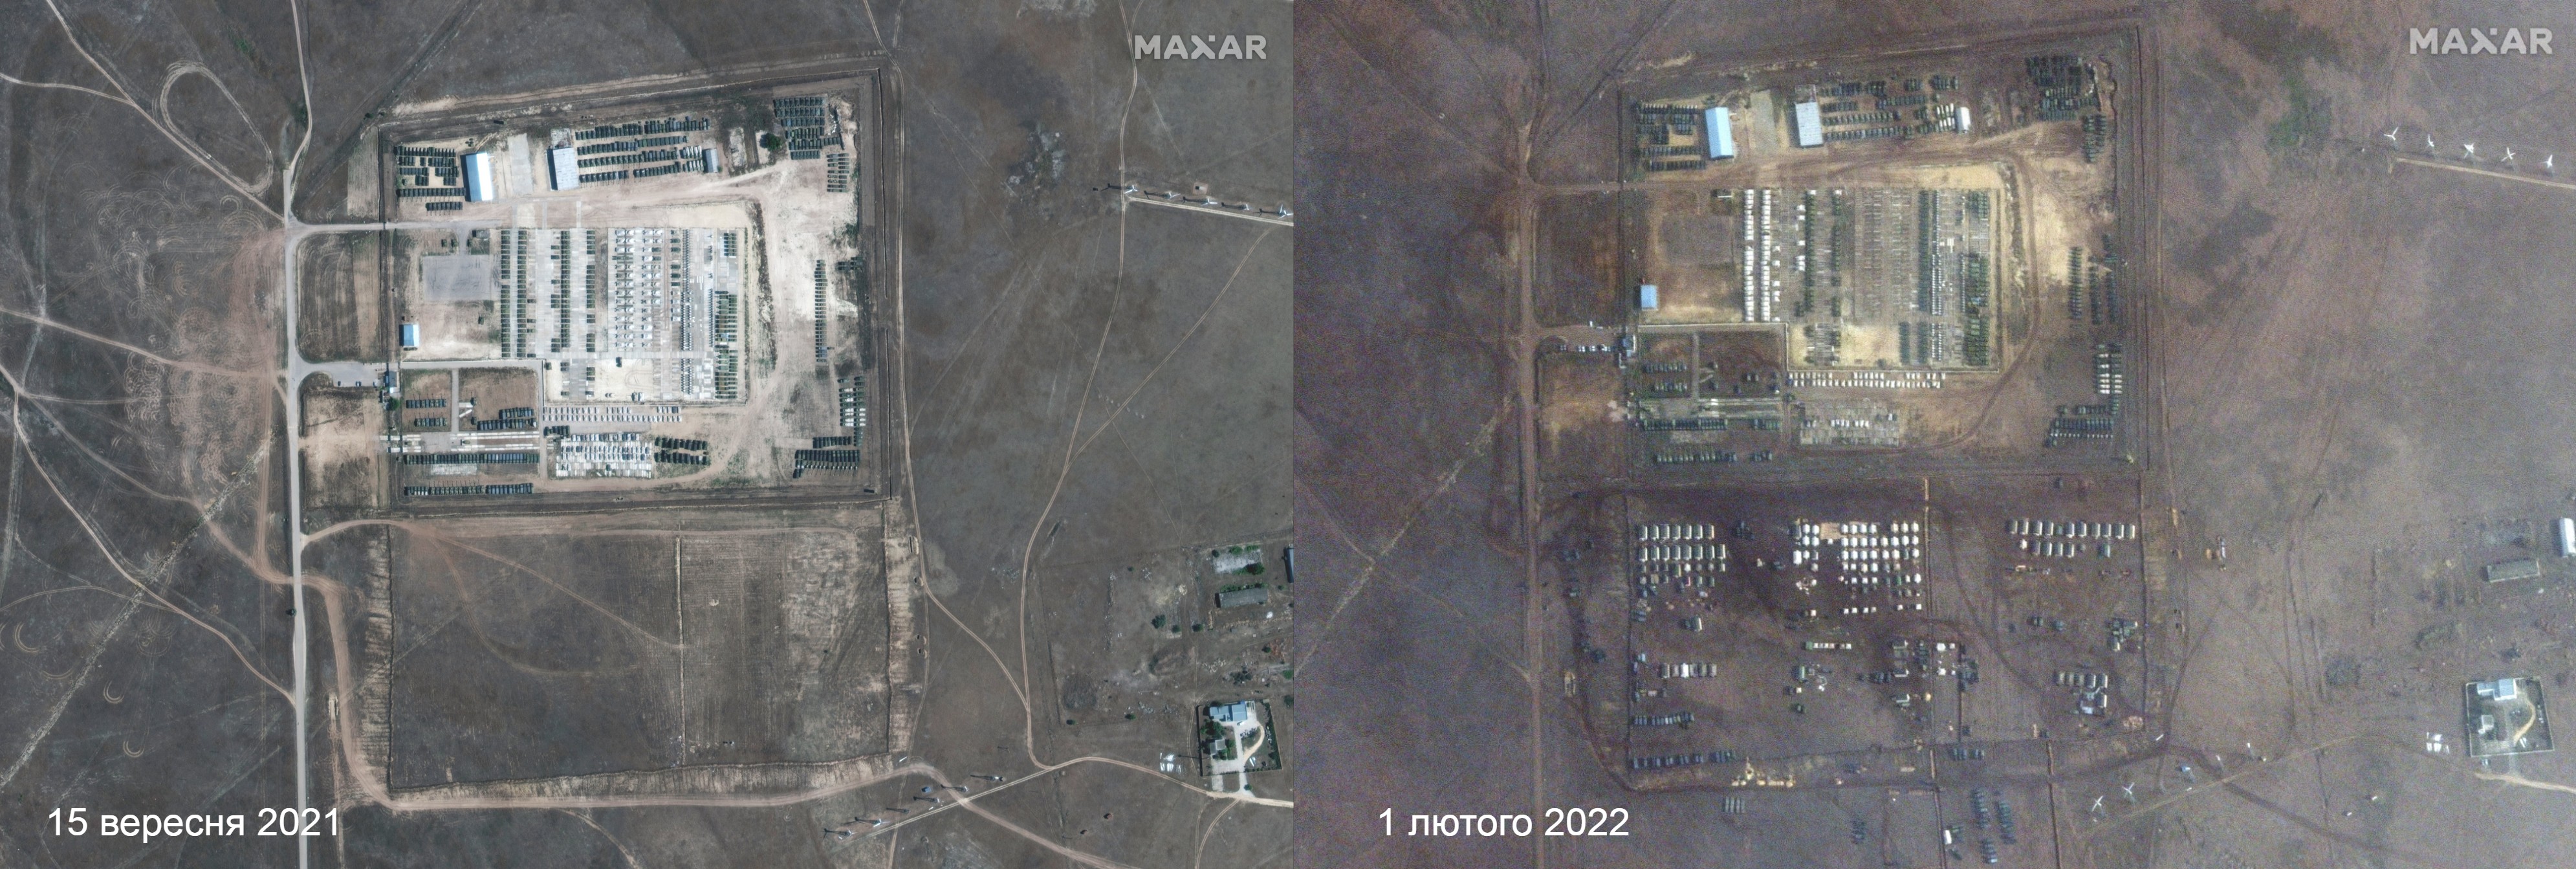 Новый российский военный лагерь под Новоозерным (Ибраш-Эли), Крым (кликнуть для увеличения)